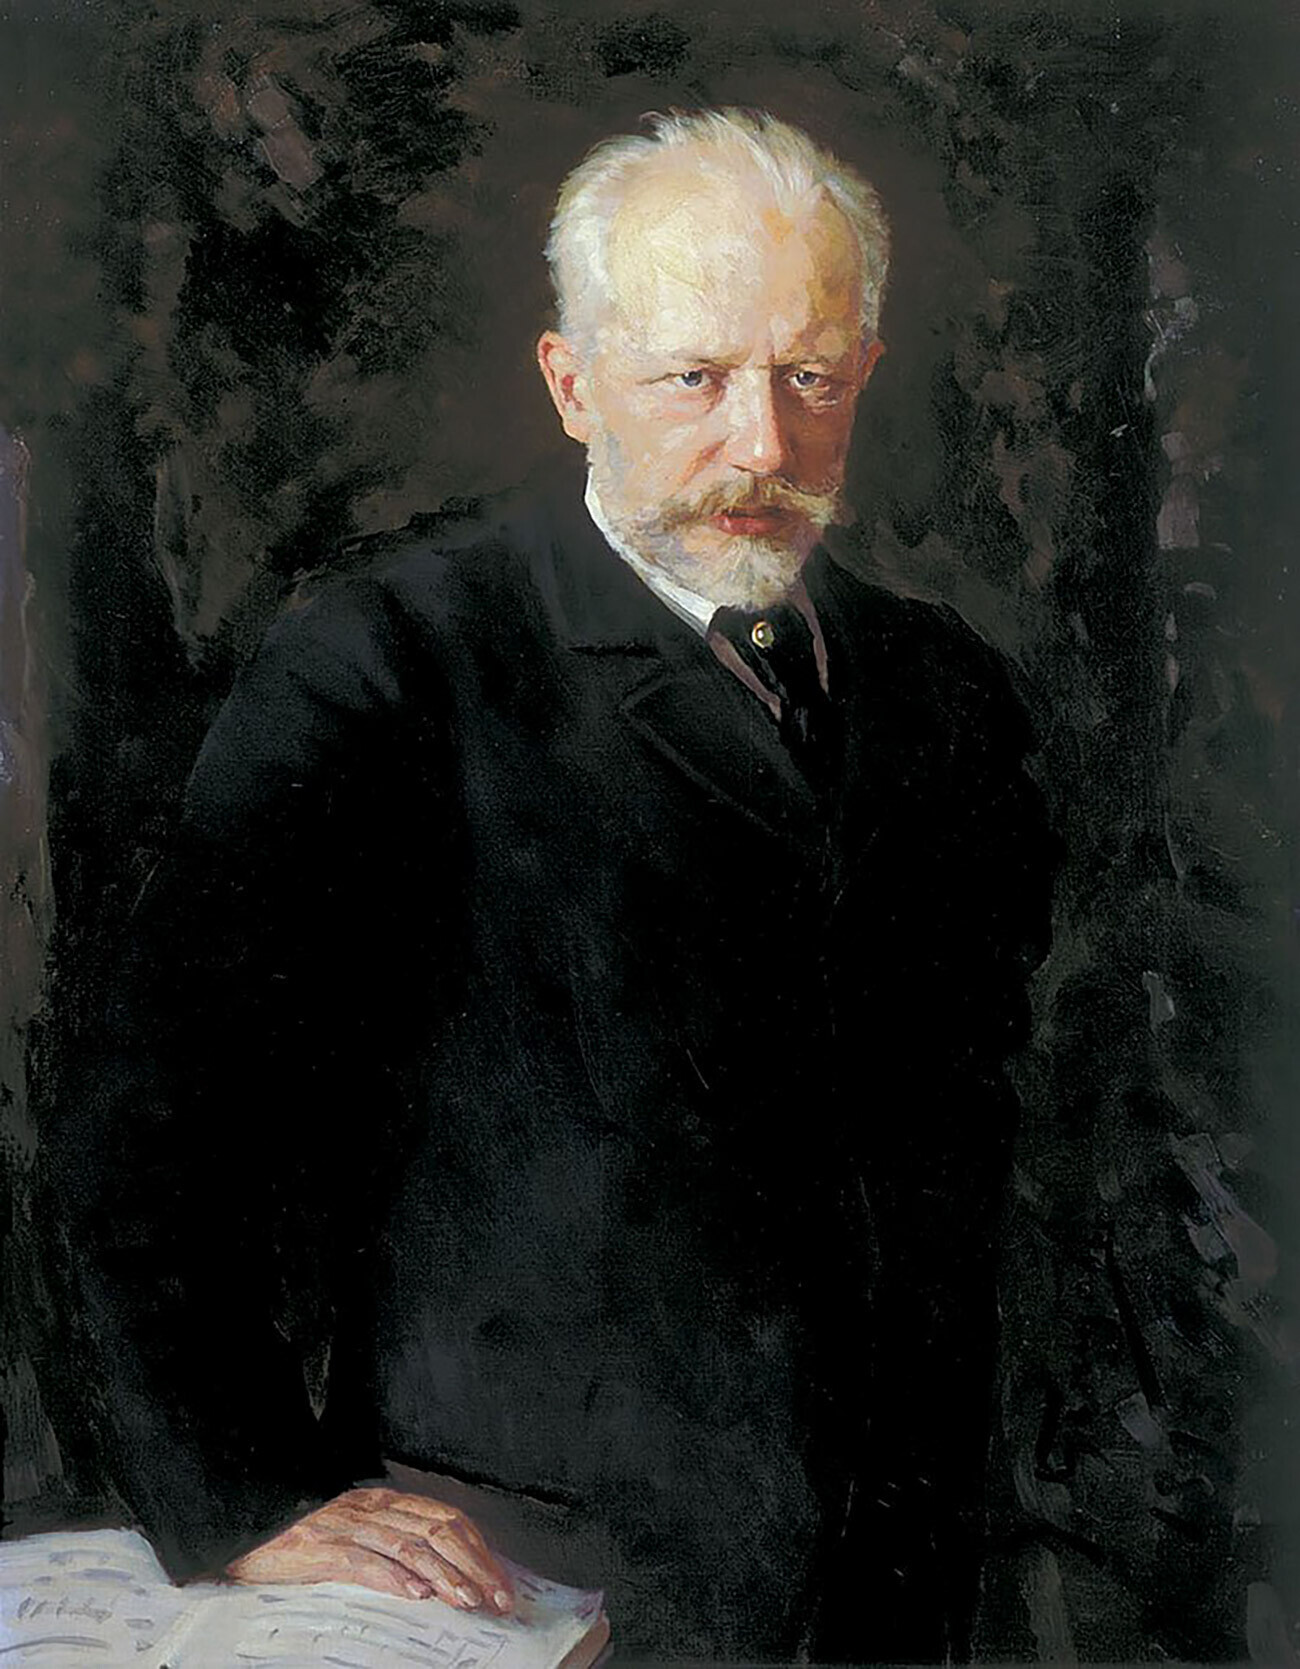 Retrato de Piotr Tchaikovsky
